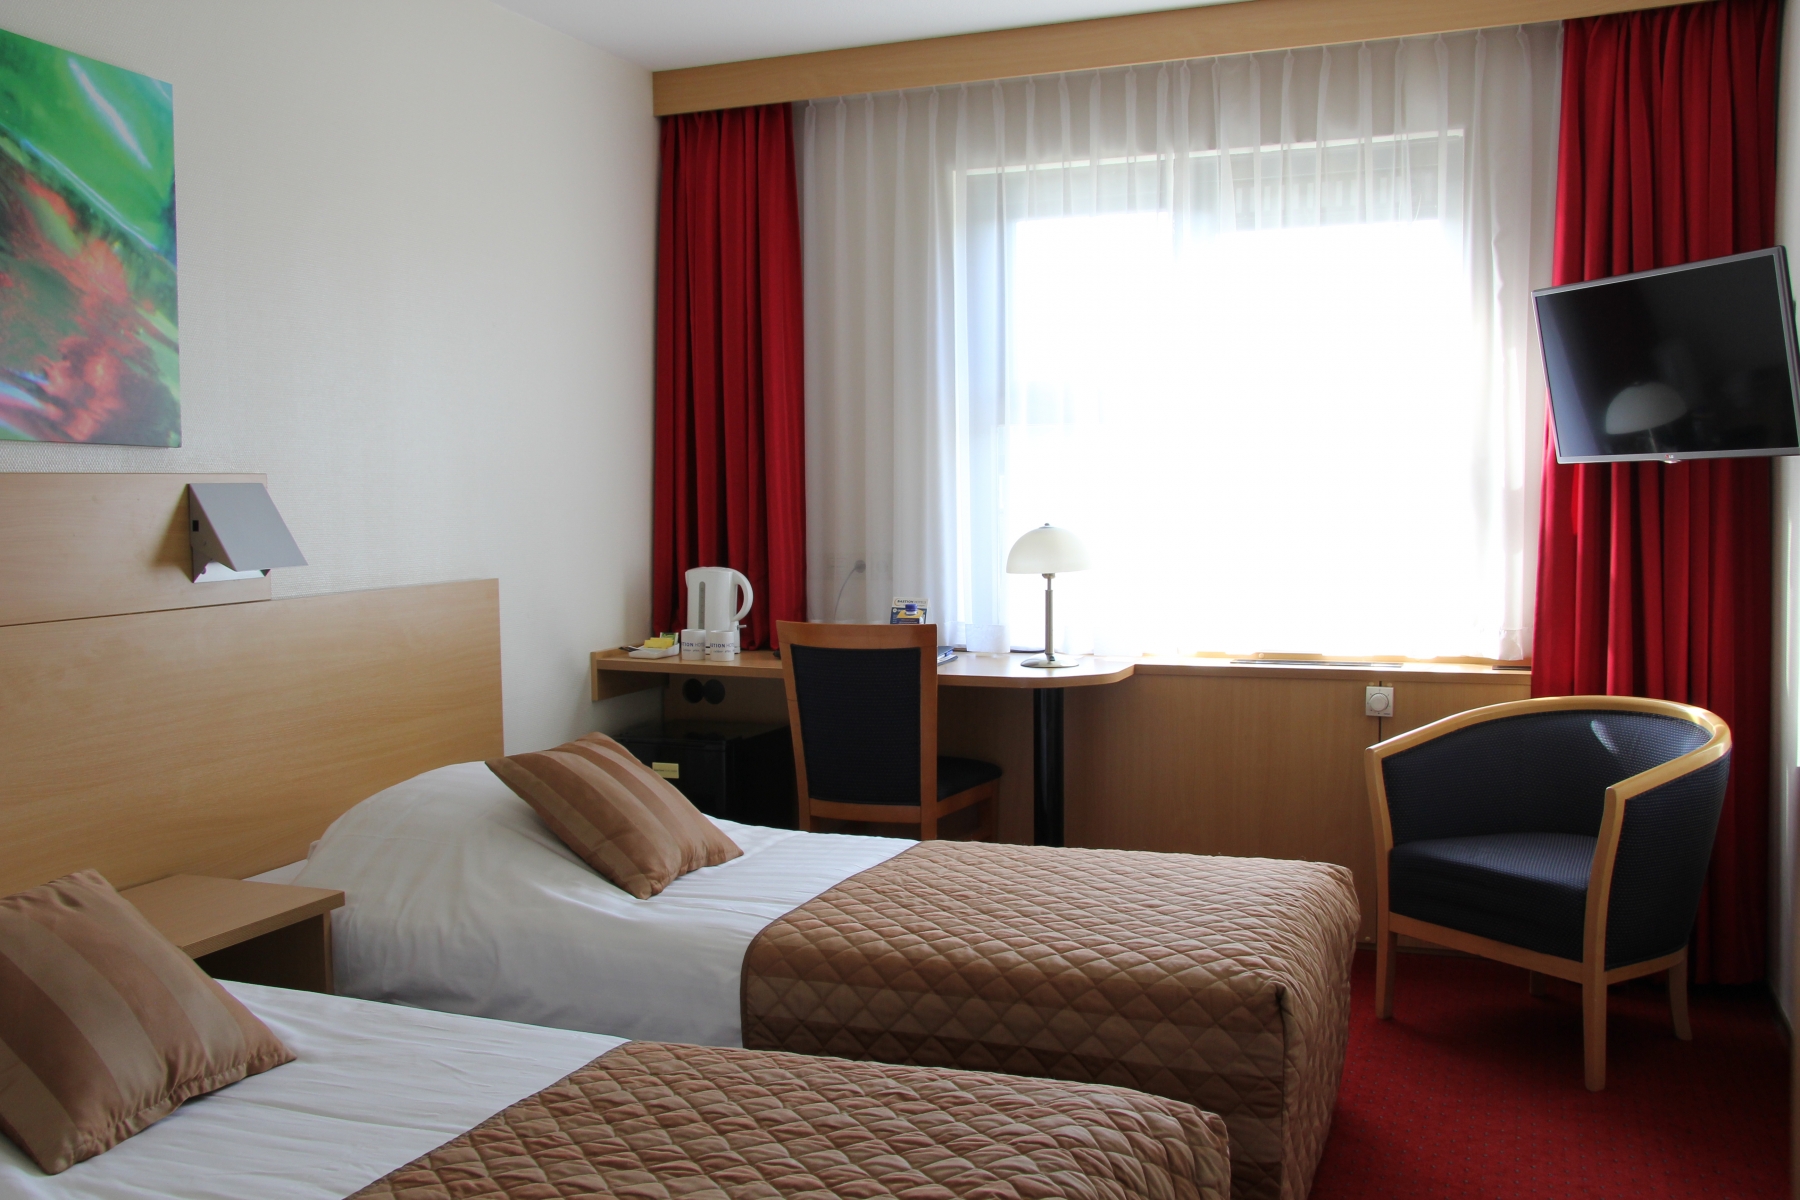 Bastion Hotel Leiden Voorschoten <br/>69.00 ew <br/> <a href='http://vakantieoplossing.nl/outpage/?id=96a2e7b749a4a3b0b6f73e6bde40f2d5' target='_blank'>View Details</a>